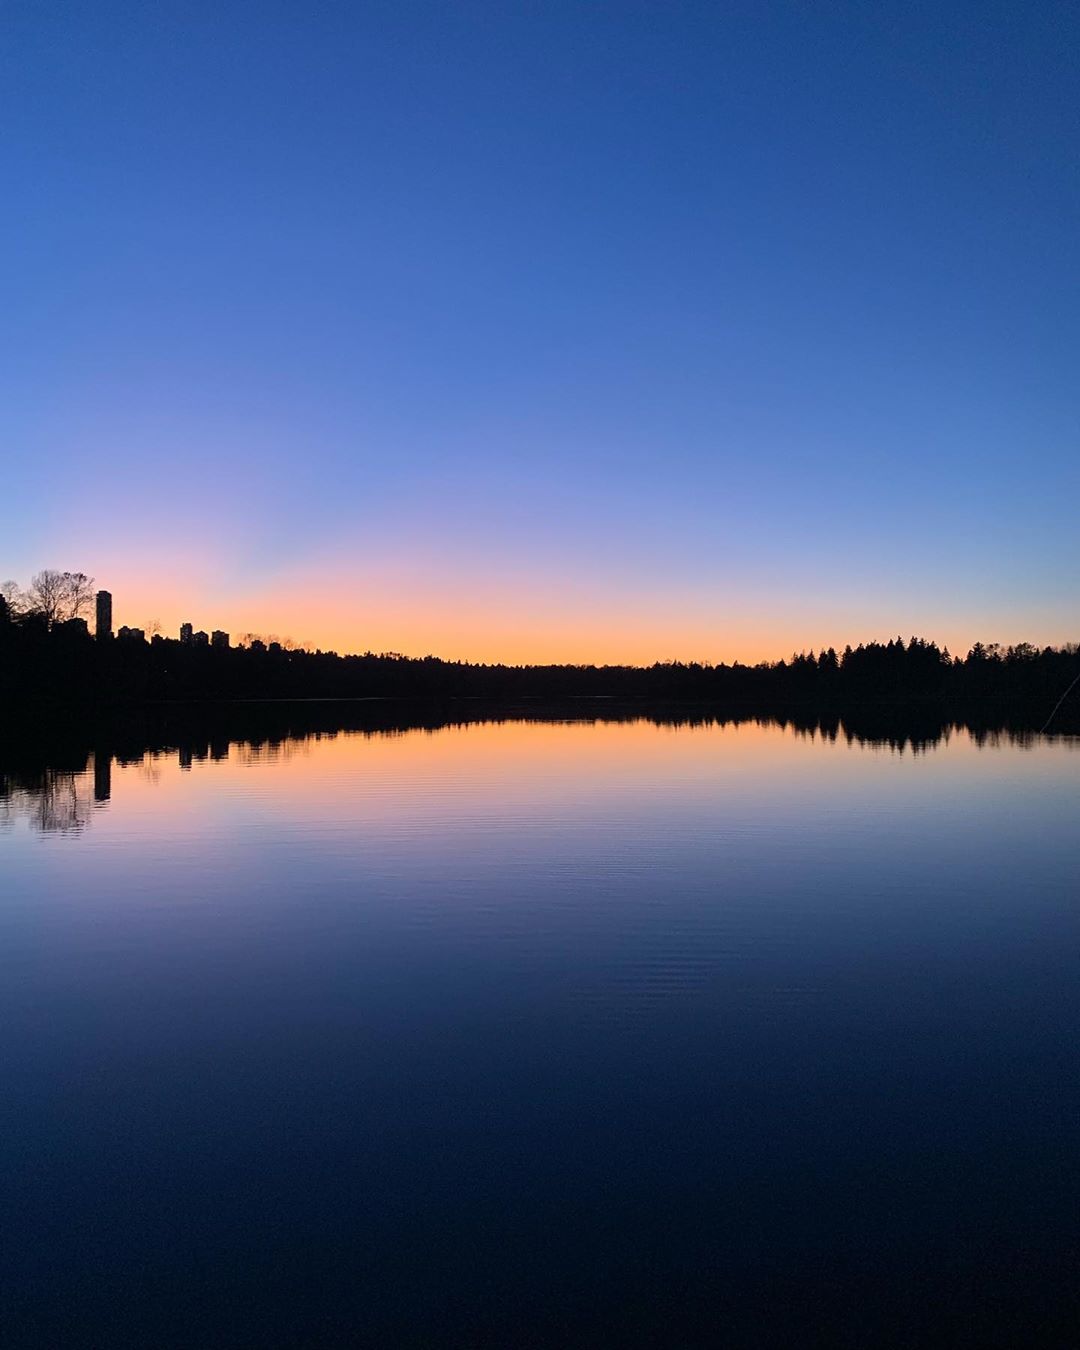 Deer Lake this evening.